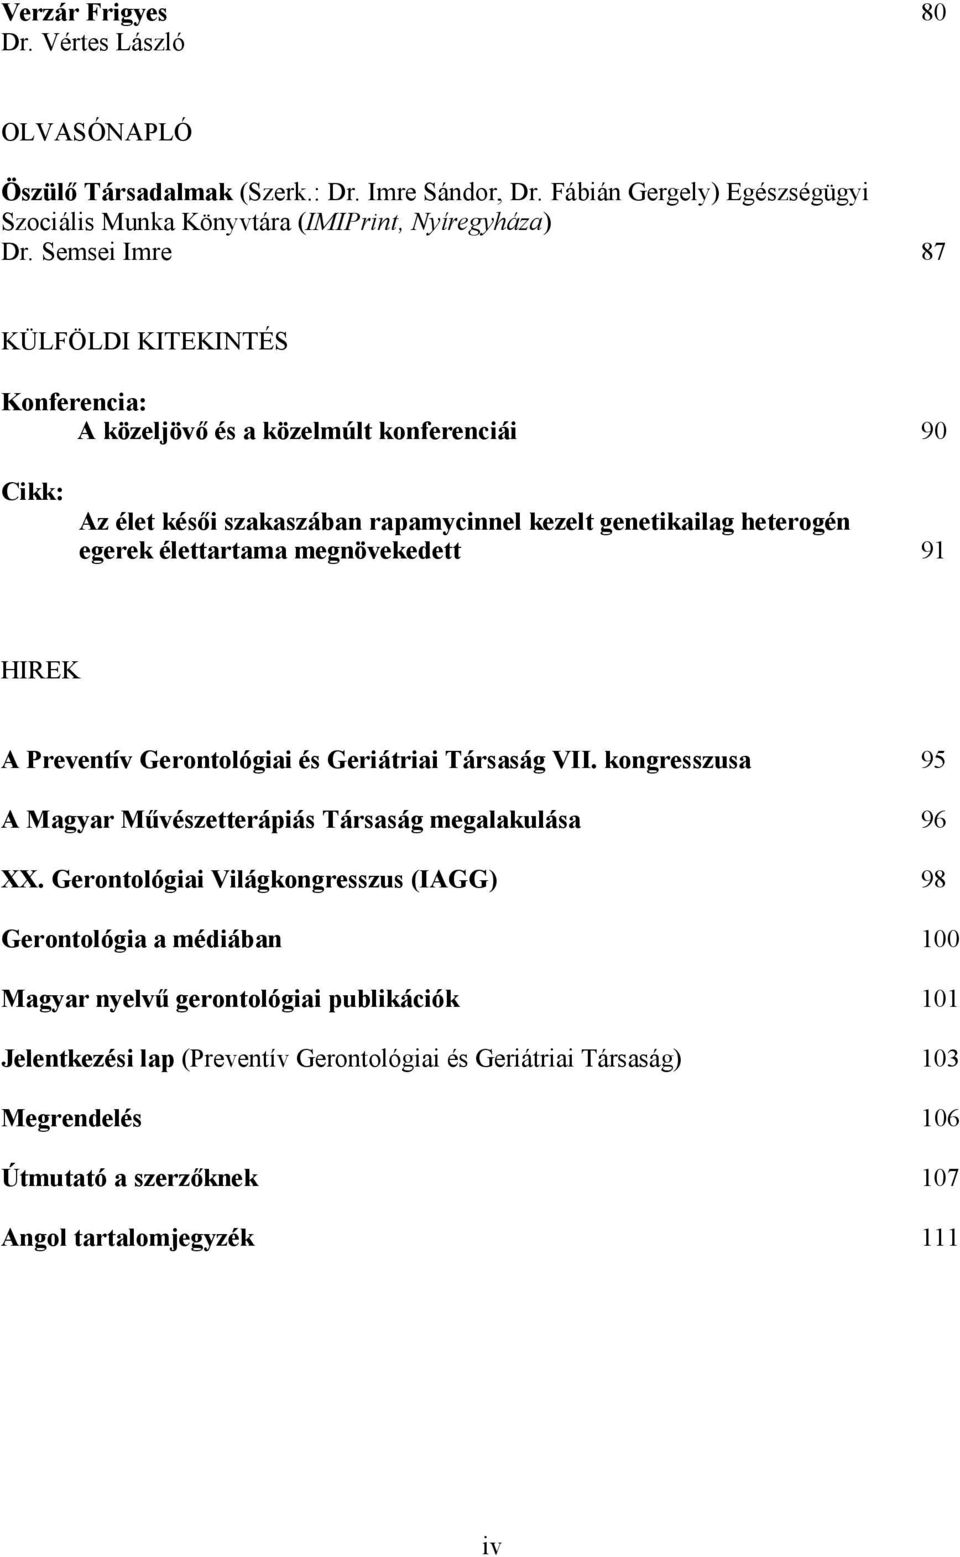 megnövekedett 91 HIREK A Preventív Gerontológiai és Geriátriai Társaság VII. kongresszusa 95 A Magyar Mővészetterápiás Társaság megalakulása 96 XX.